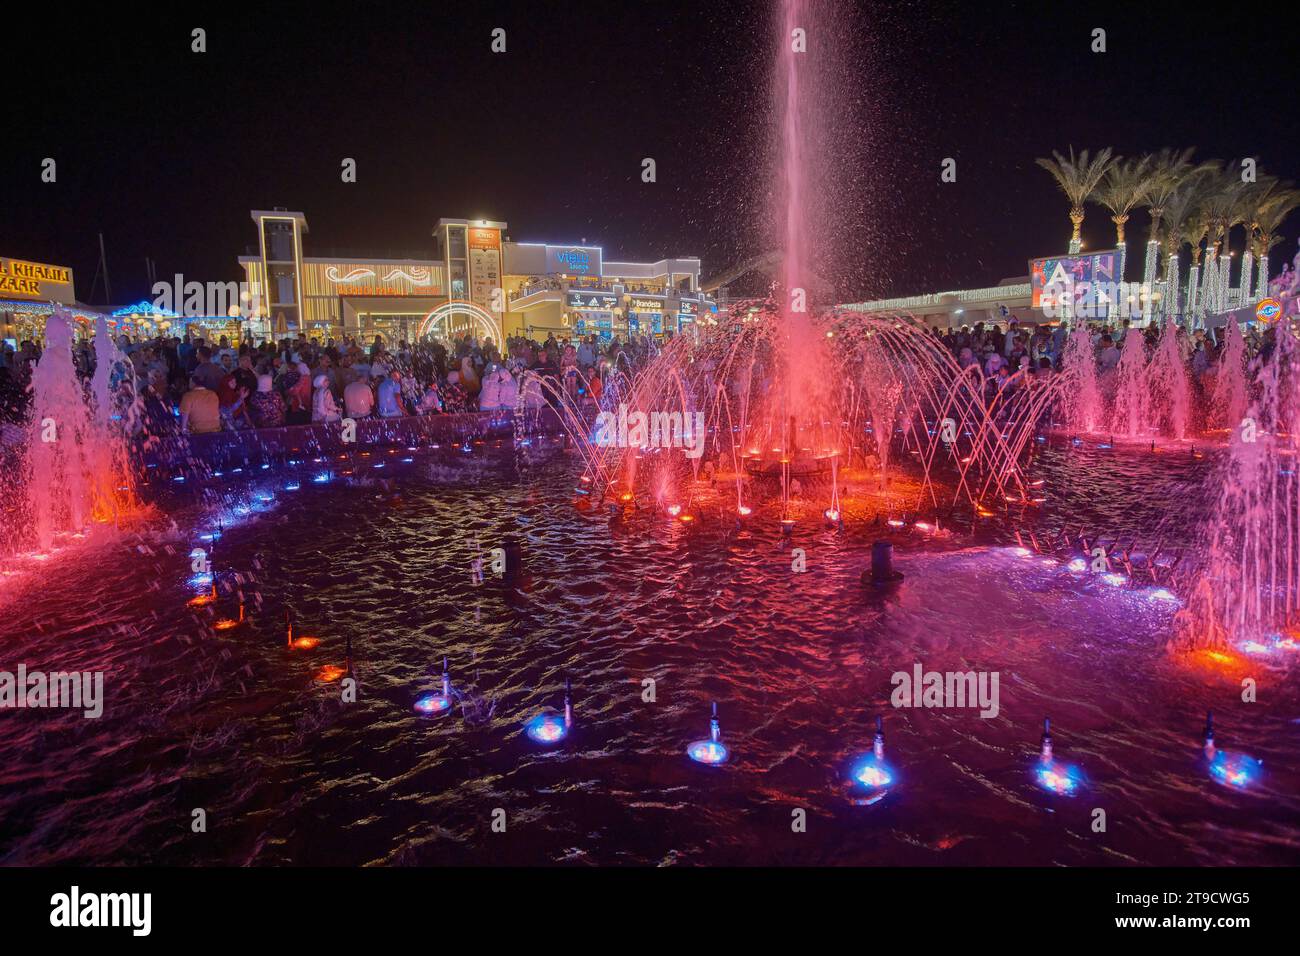 La place SOHO à Sharm El Sheikh, en Égypte, est une place animée avec des fontaines, des restaurants-salons, une patinoire, une vie nocturne et d'autres divertissements. Banque D'Images